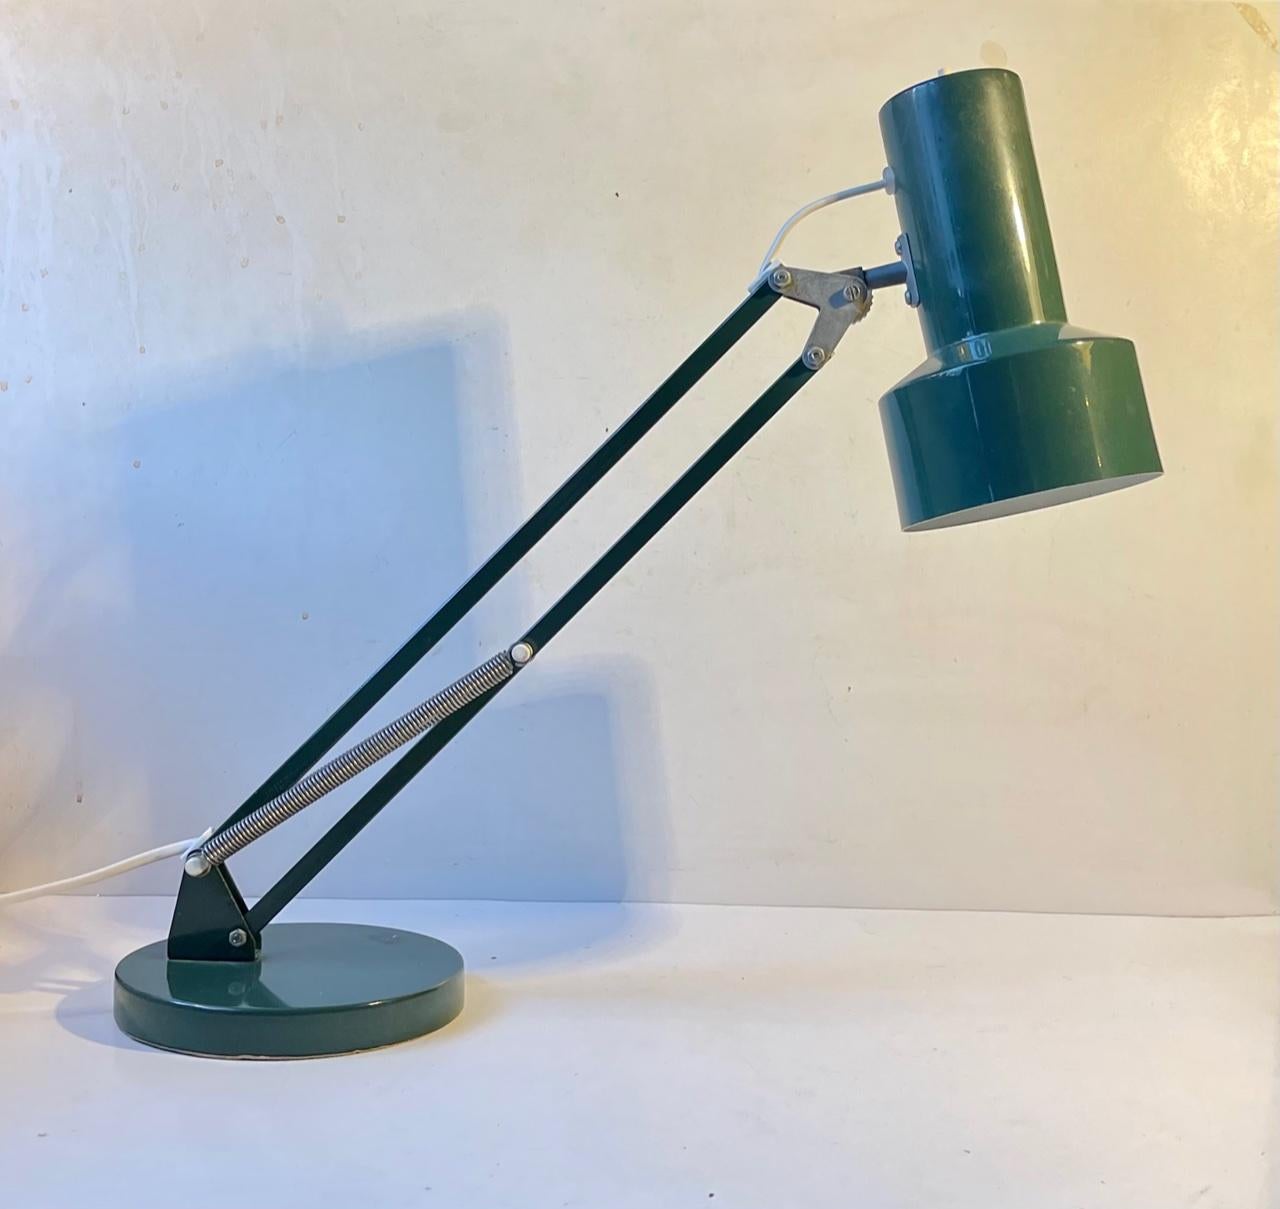 Eine seltene tealgrüne Tischlampe mit voll verstellbarem Stiel und Schirm. In Dänemark nennen wir diese Architekten-Tischlampen aufgrund ihrer Multifunktionalität. Sie besteht aus pulverbeschichtetem Aluminium und Stahl und ist inspiriert von der